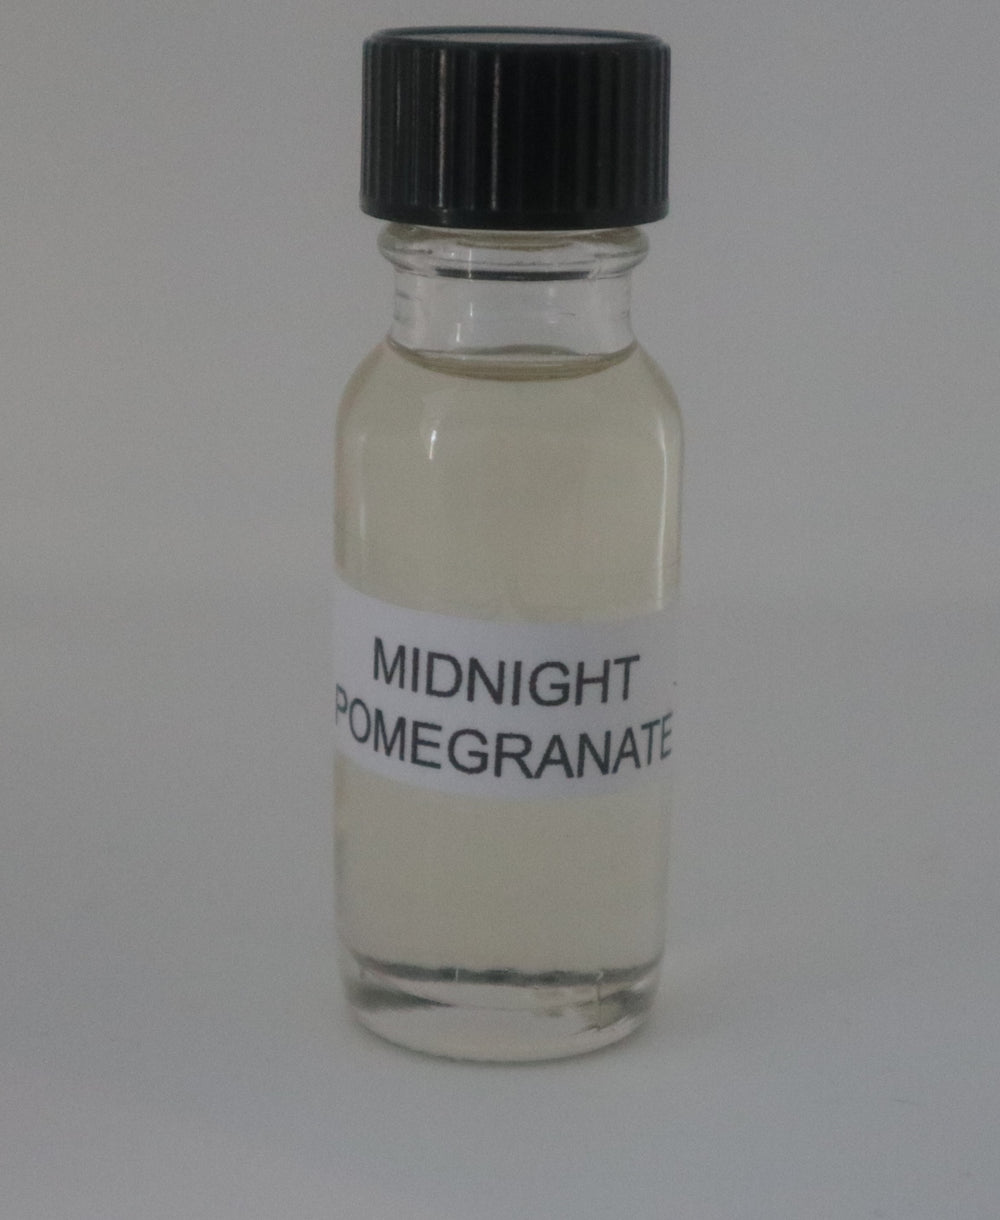 Midnight Pomegranate Burning Oil